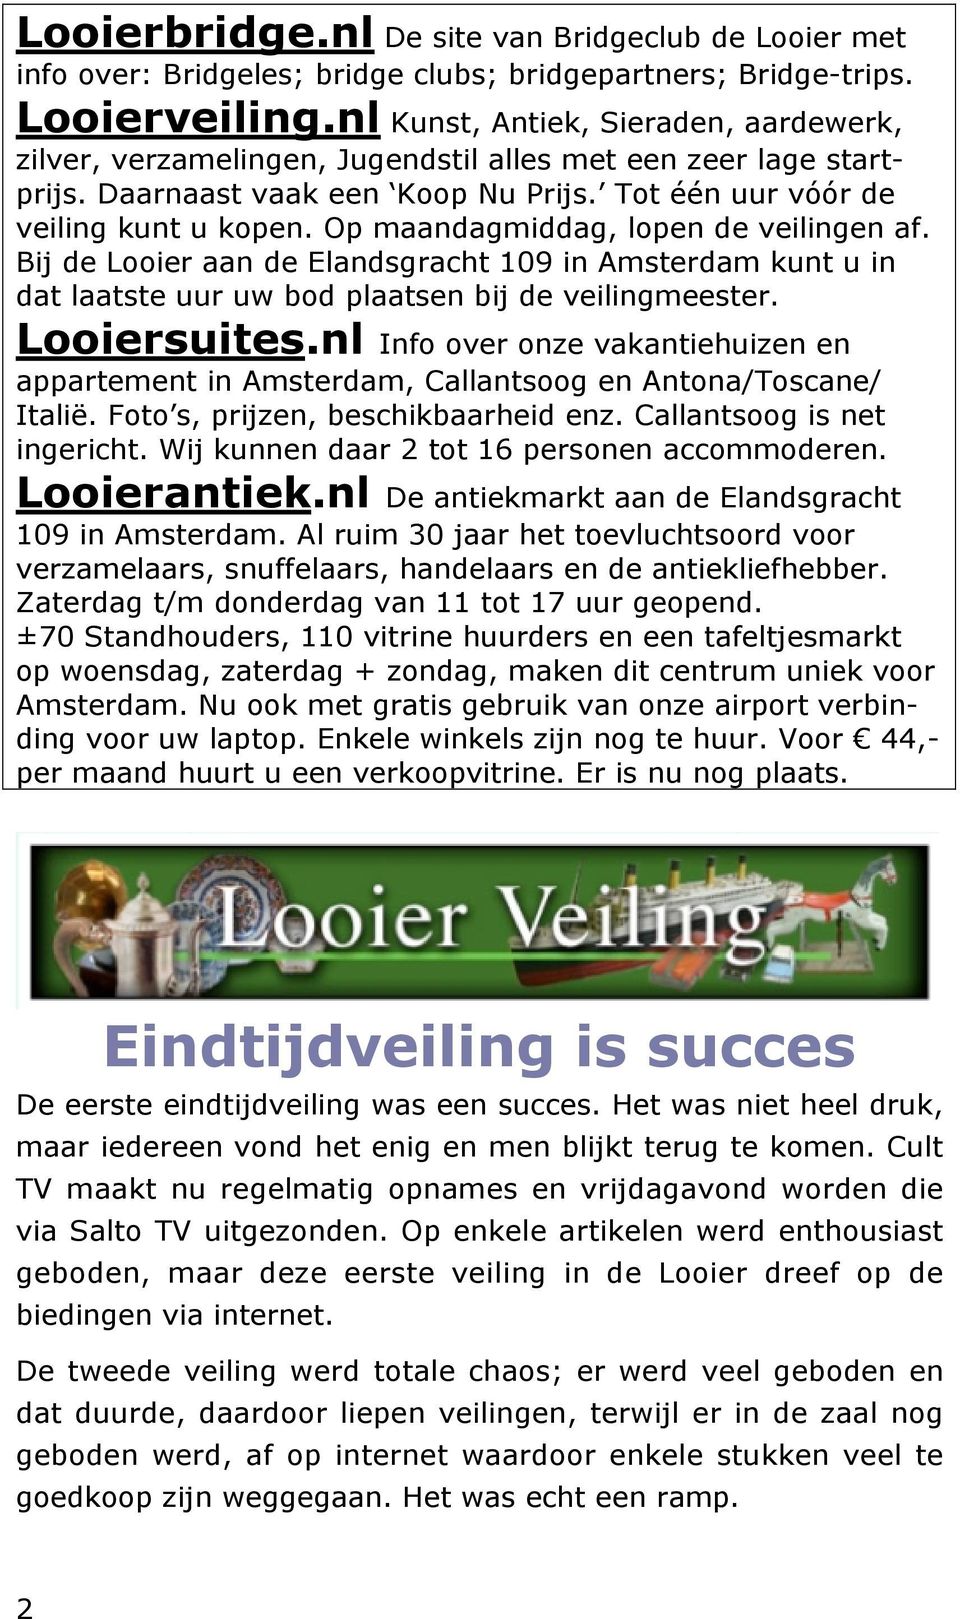 Op maandagmiddag, lopen de veilingen af. Bij de Looier aan de Elandsgracht 109 in Amsterdam kunt u in dat laatste uur uw bod plaatsen bij de veilingmeester. Looiersuites.